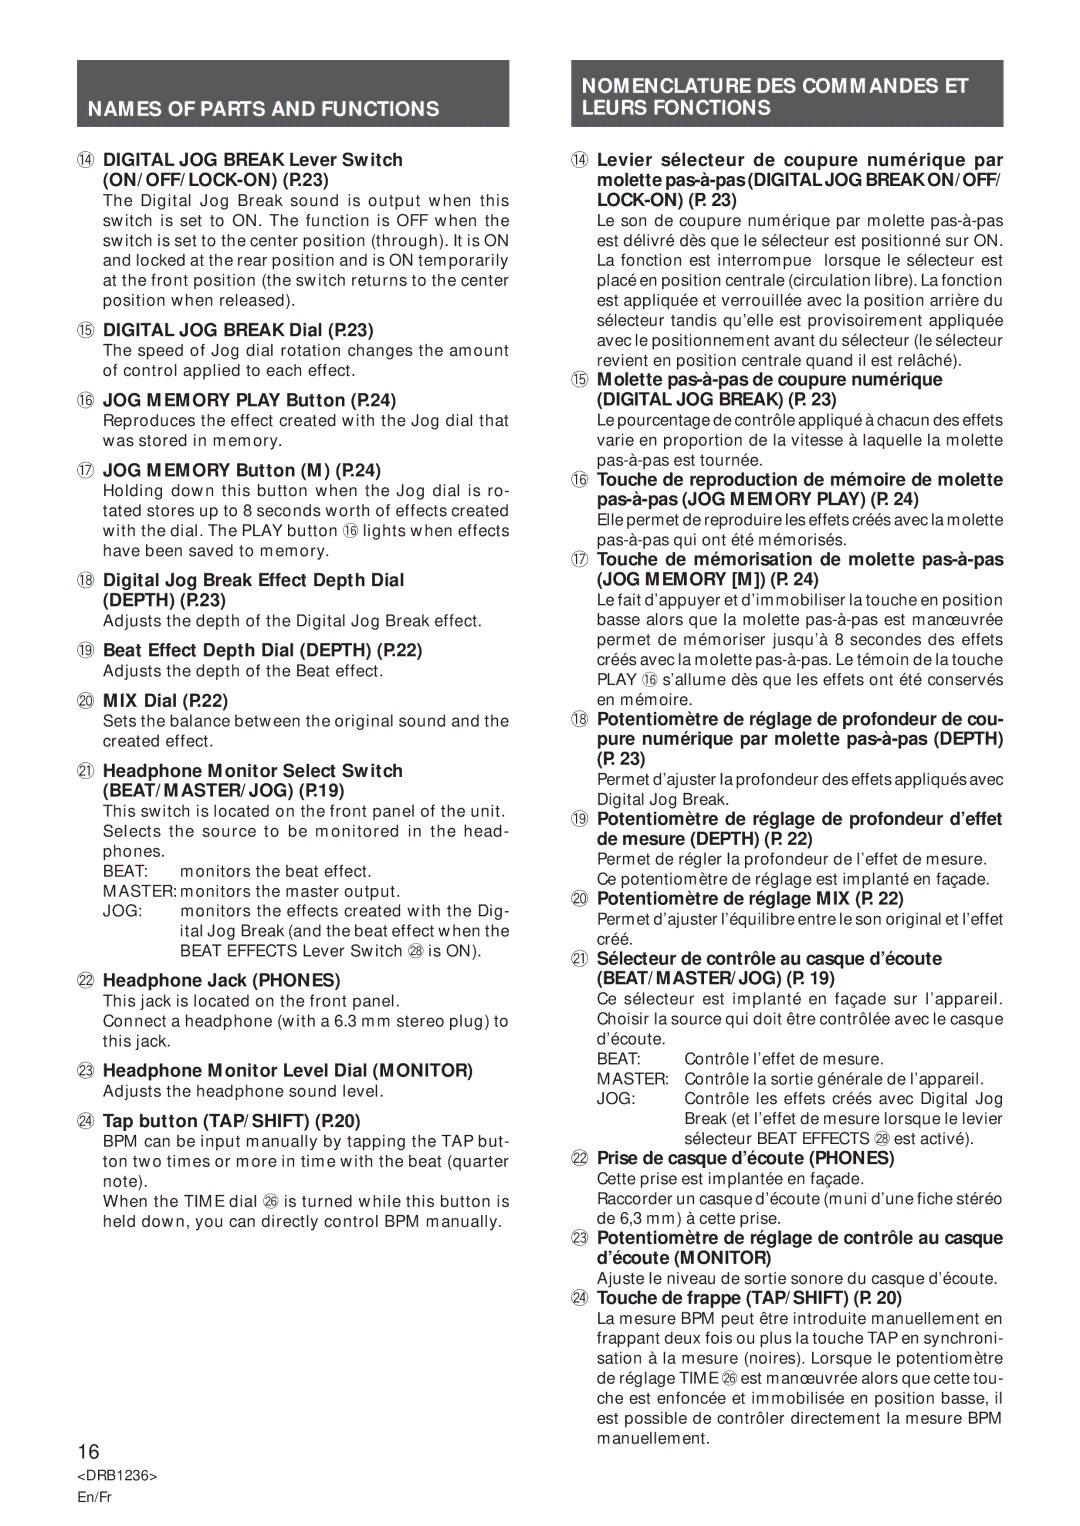 Pioneer Efx-500 operating instructions Nomenclature DES Commandes ET Leurs Fonctions 